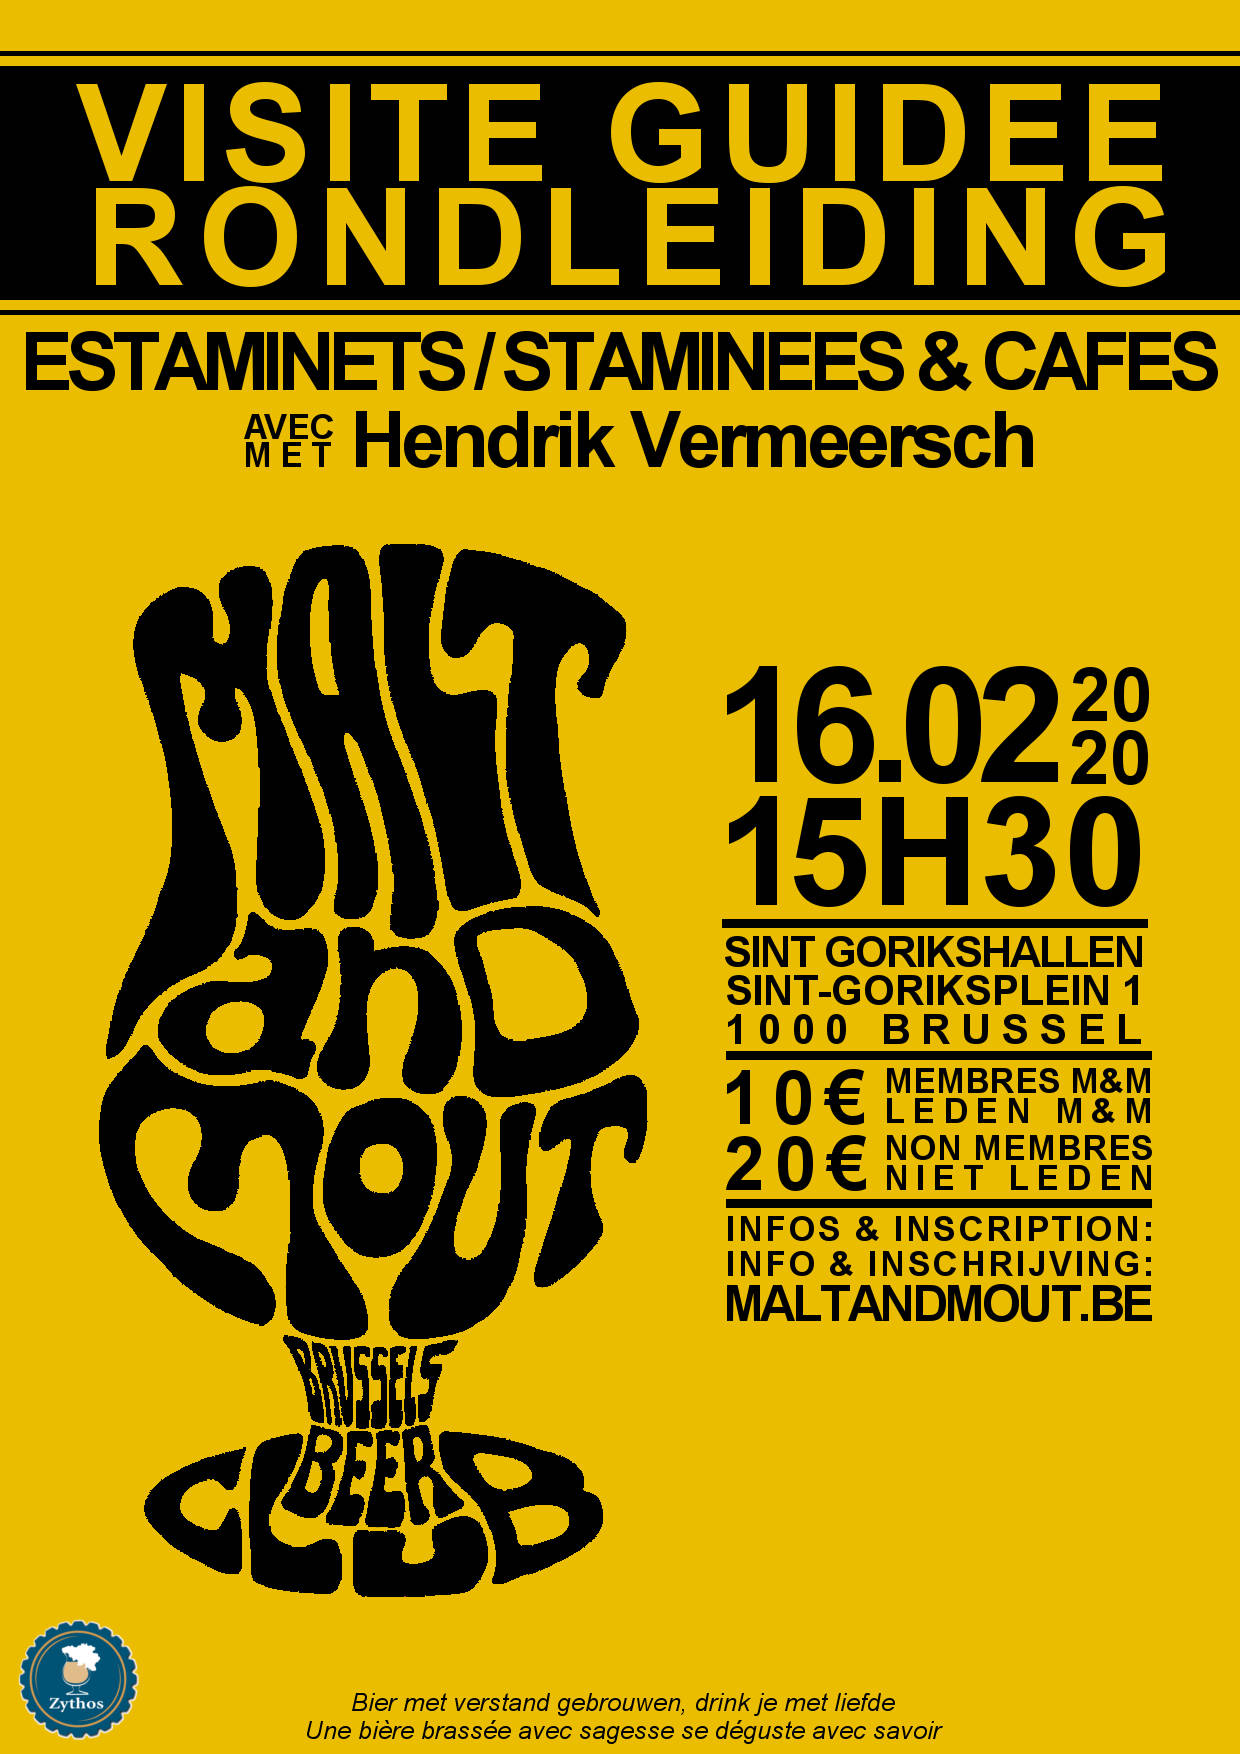 Estaminets / Staminees & Cafés